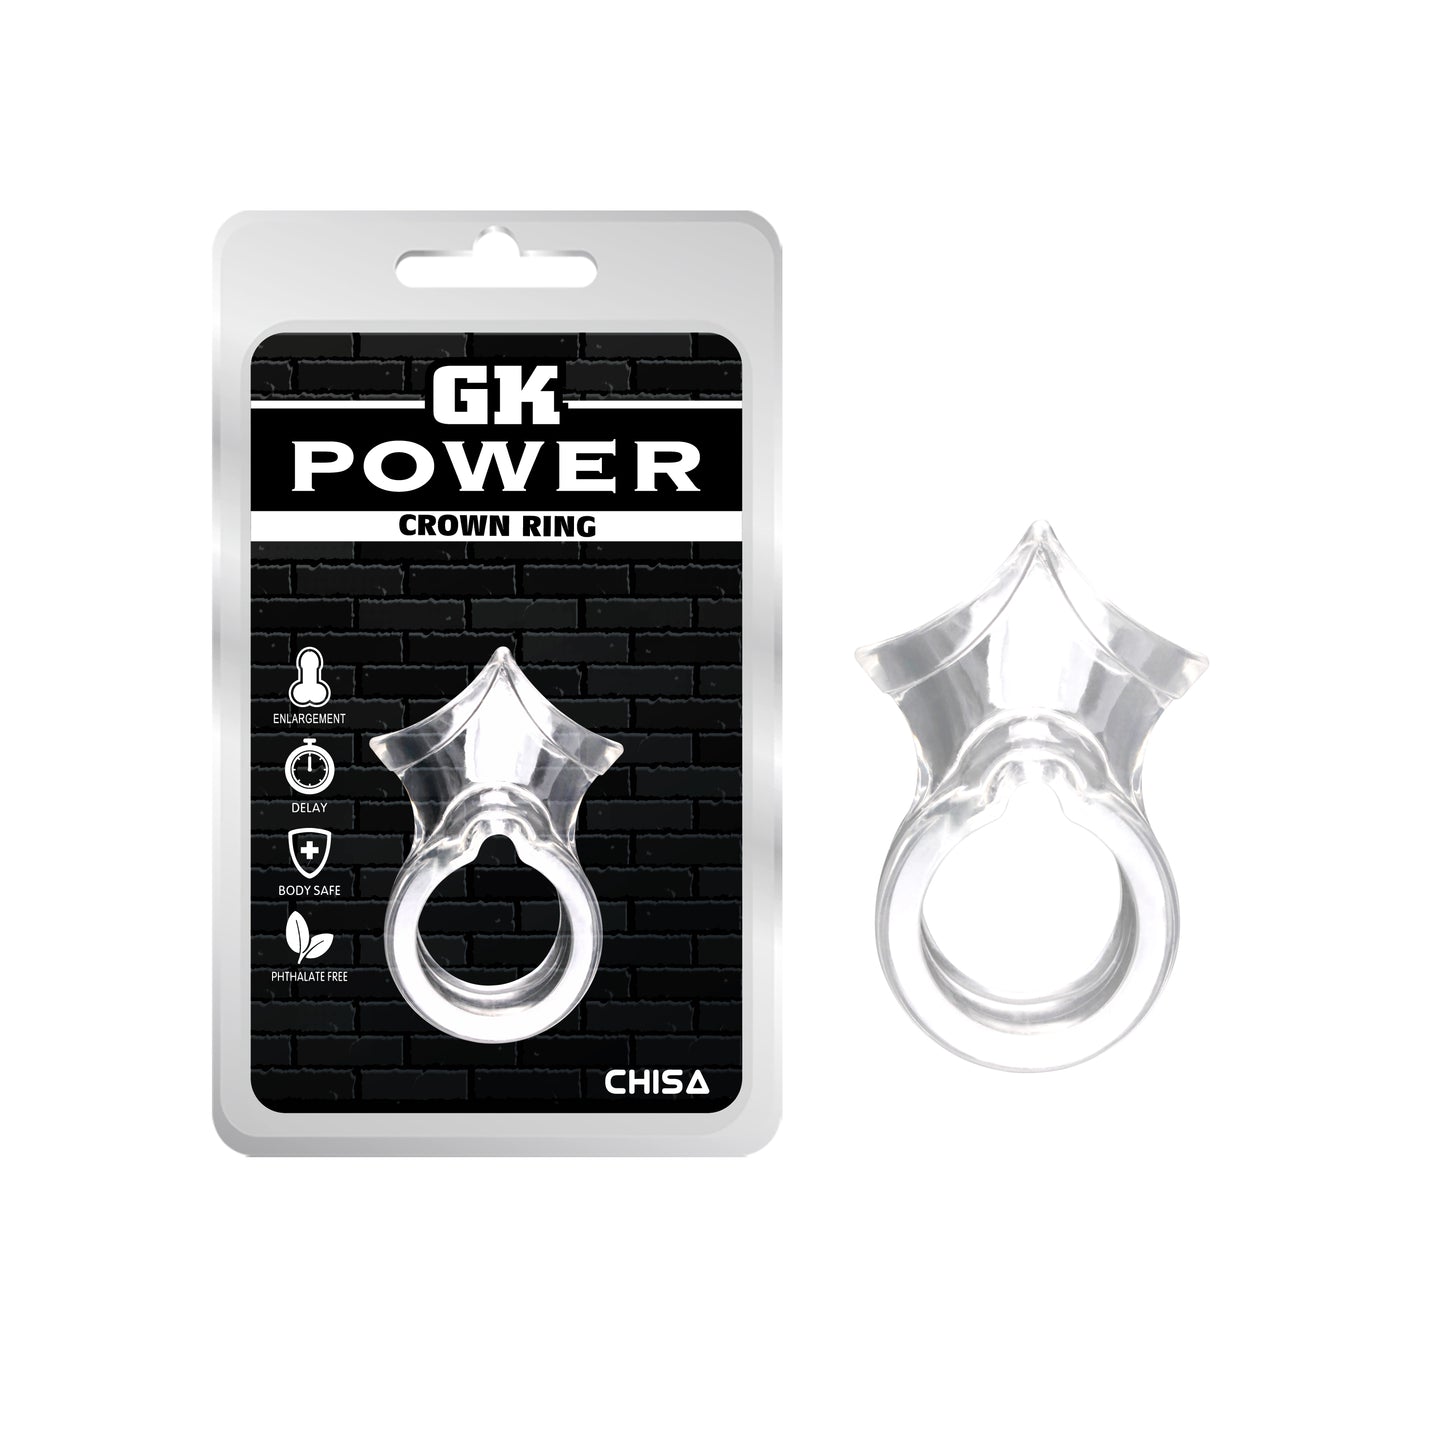 GK POWER CROWN RING